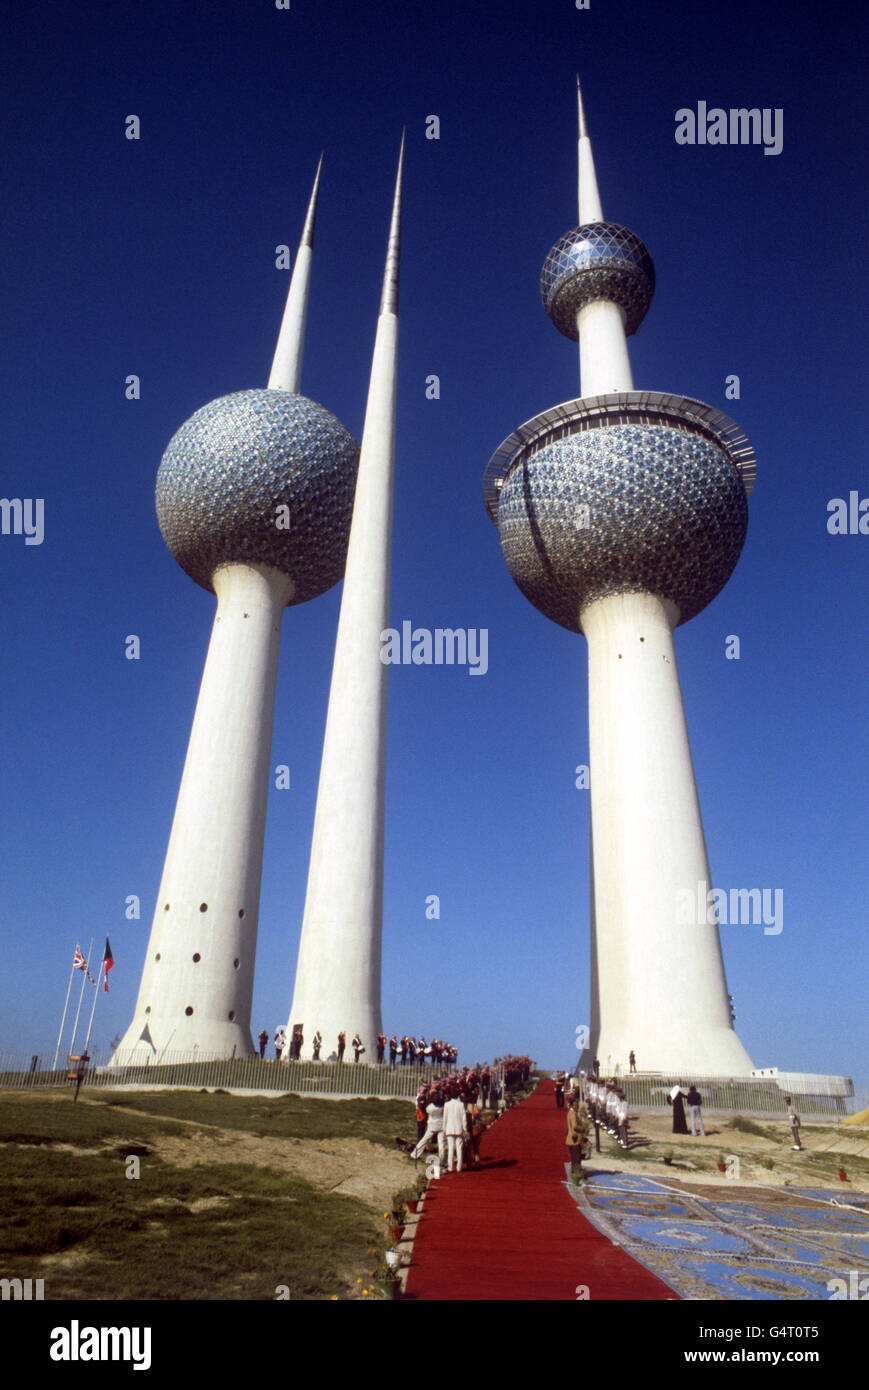 Le Water Towers di Kuwait, alte oltre 300 metri, sono un minareto che unisce tecnologia moderna e design tradizionale. Il tappeto rosso era per una visita della regina Elisabetta II e del duca di Edimburgo. Foto Stock